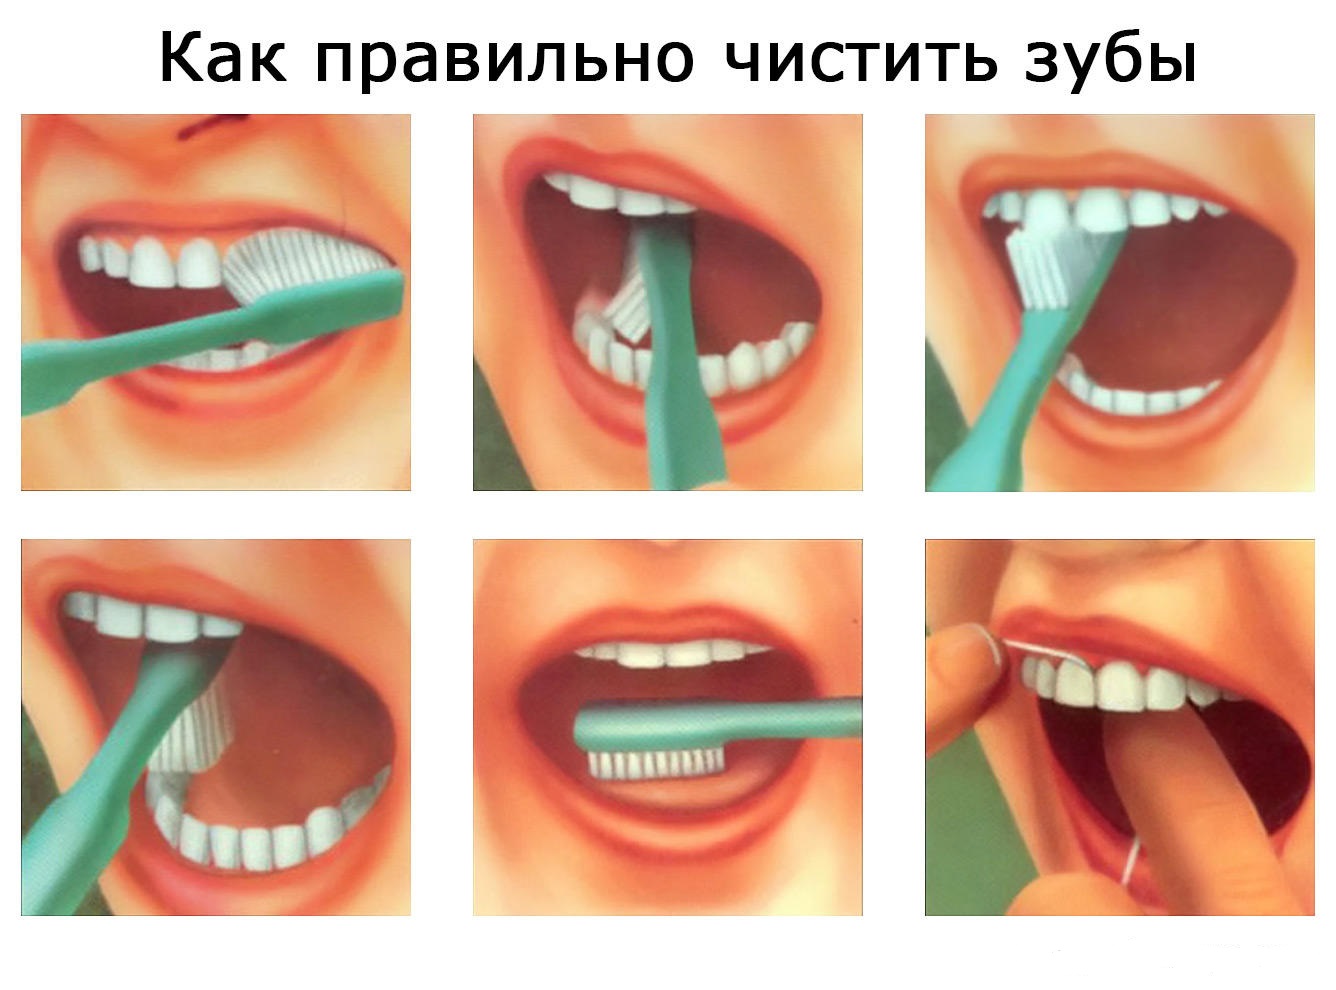 Чистка зубов вредно. Как правильно чистить зубы. КСК праивльно чистить щубы. Как правильно Чисть зубы. Правильная чистка зубов.